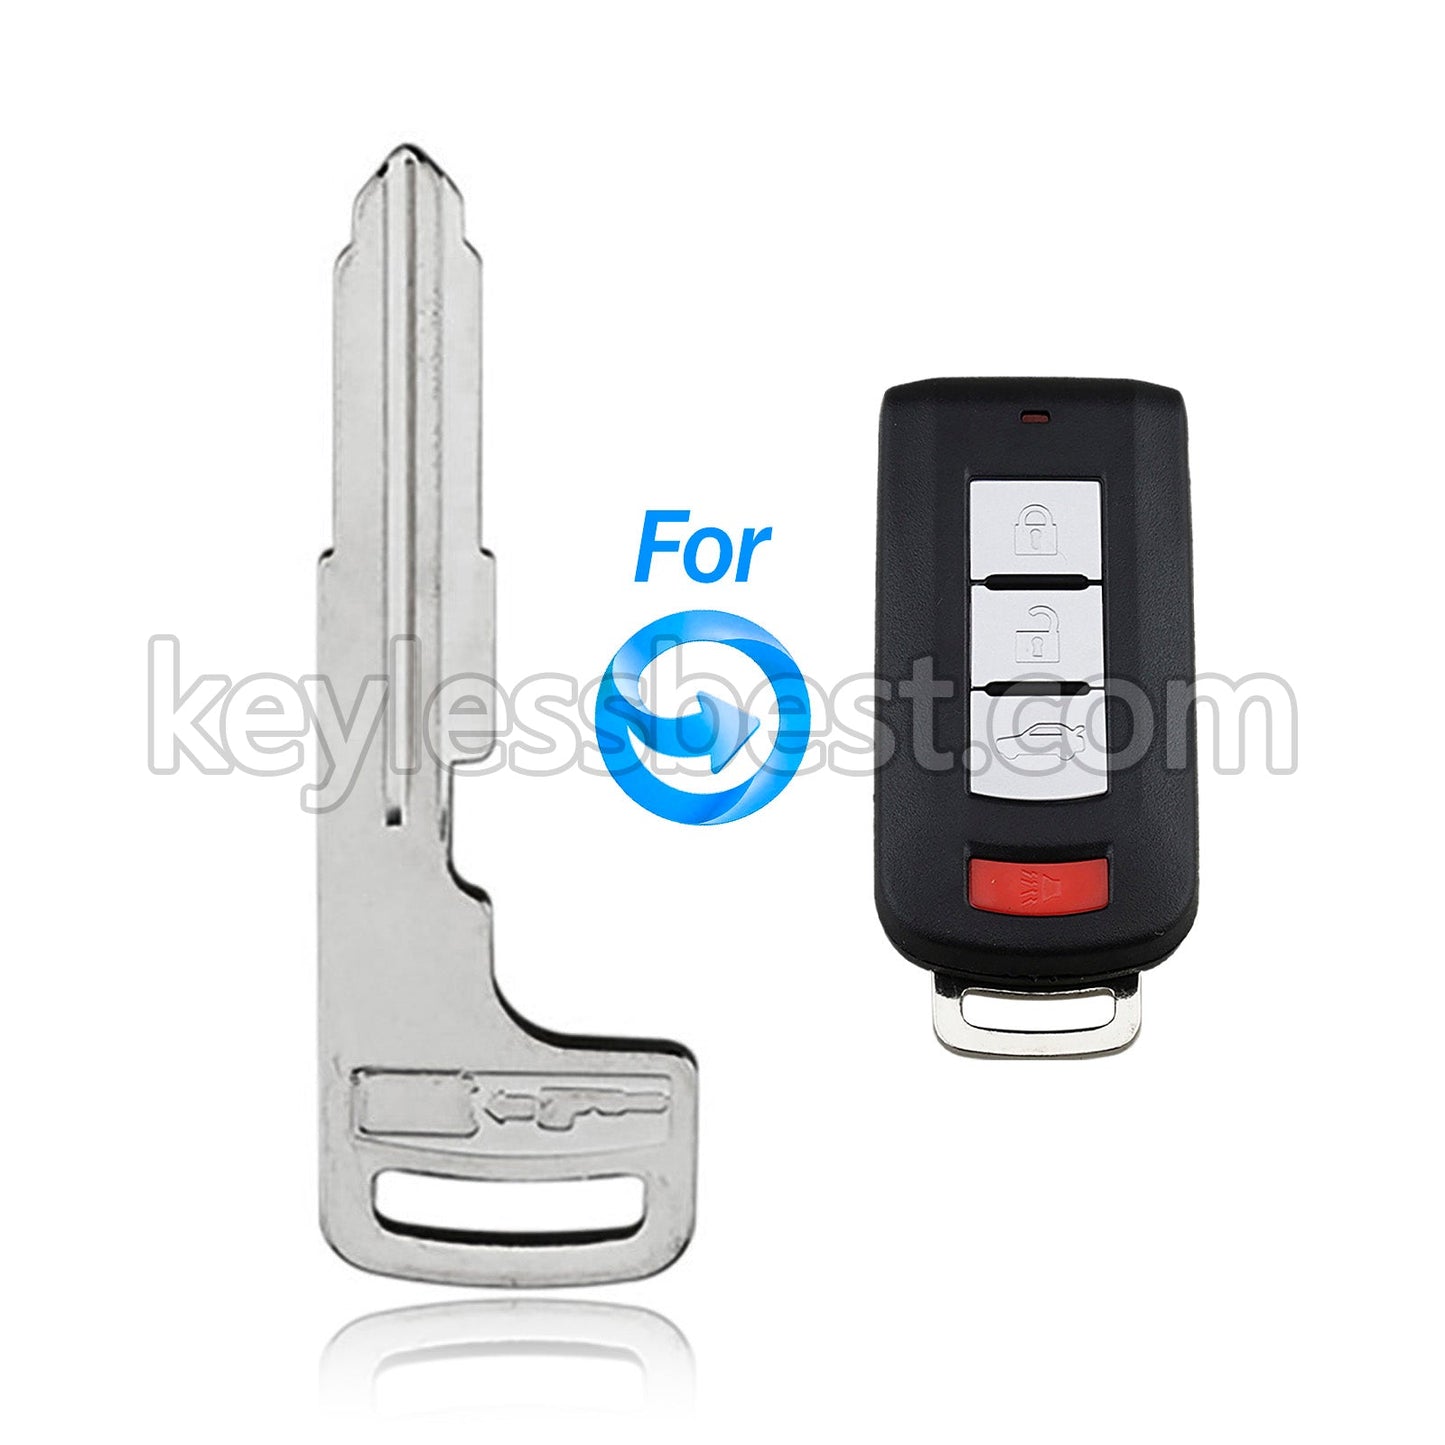 1993-2019 Mitsubishi / Smart Key Emergency Key / PN: 6370A770 / Bundle of 10